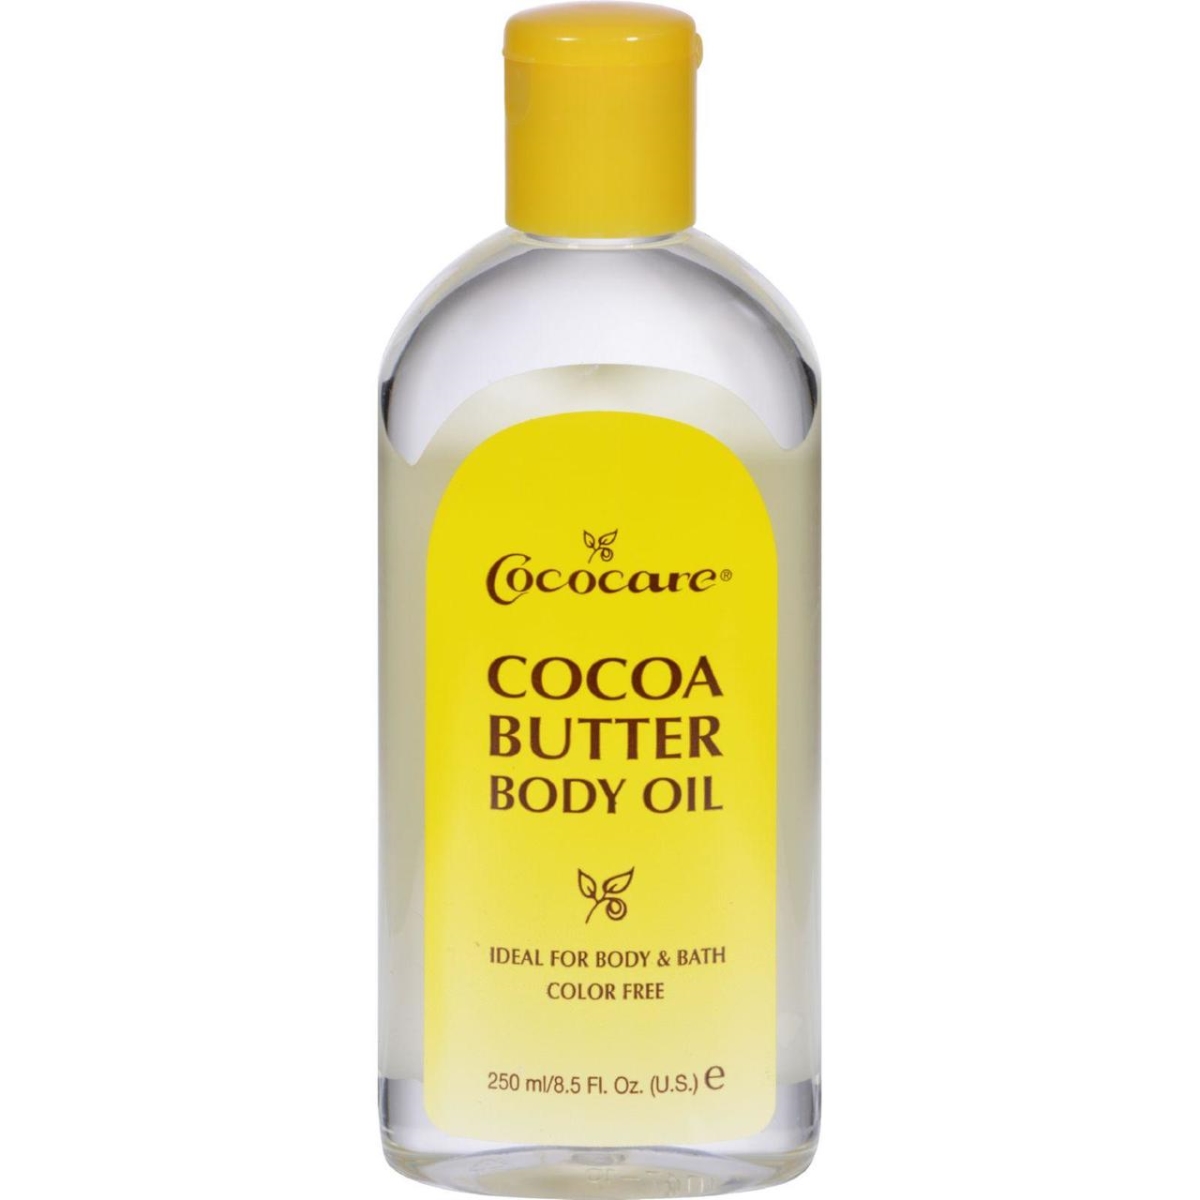 Hg0409110 8.5 Fl Oz Cocoa Butter Body Oil